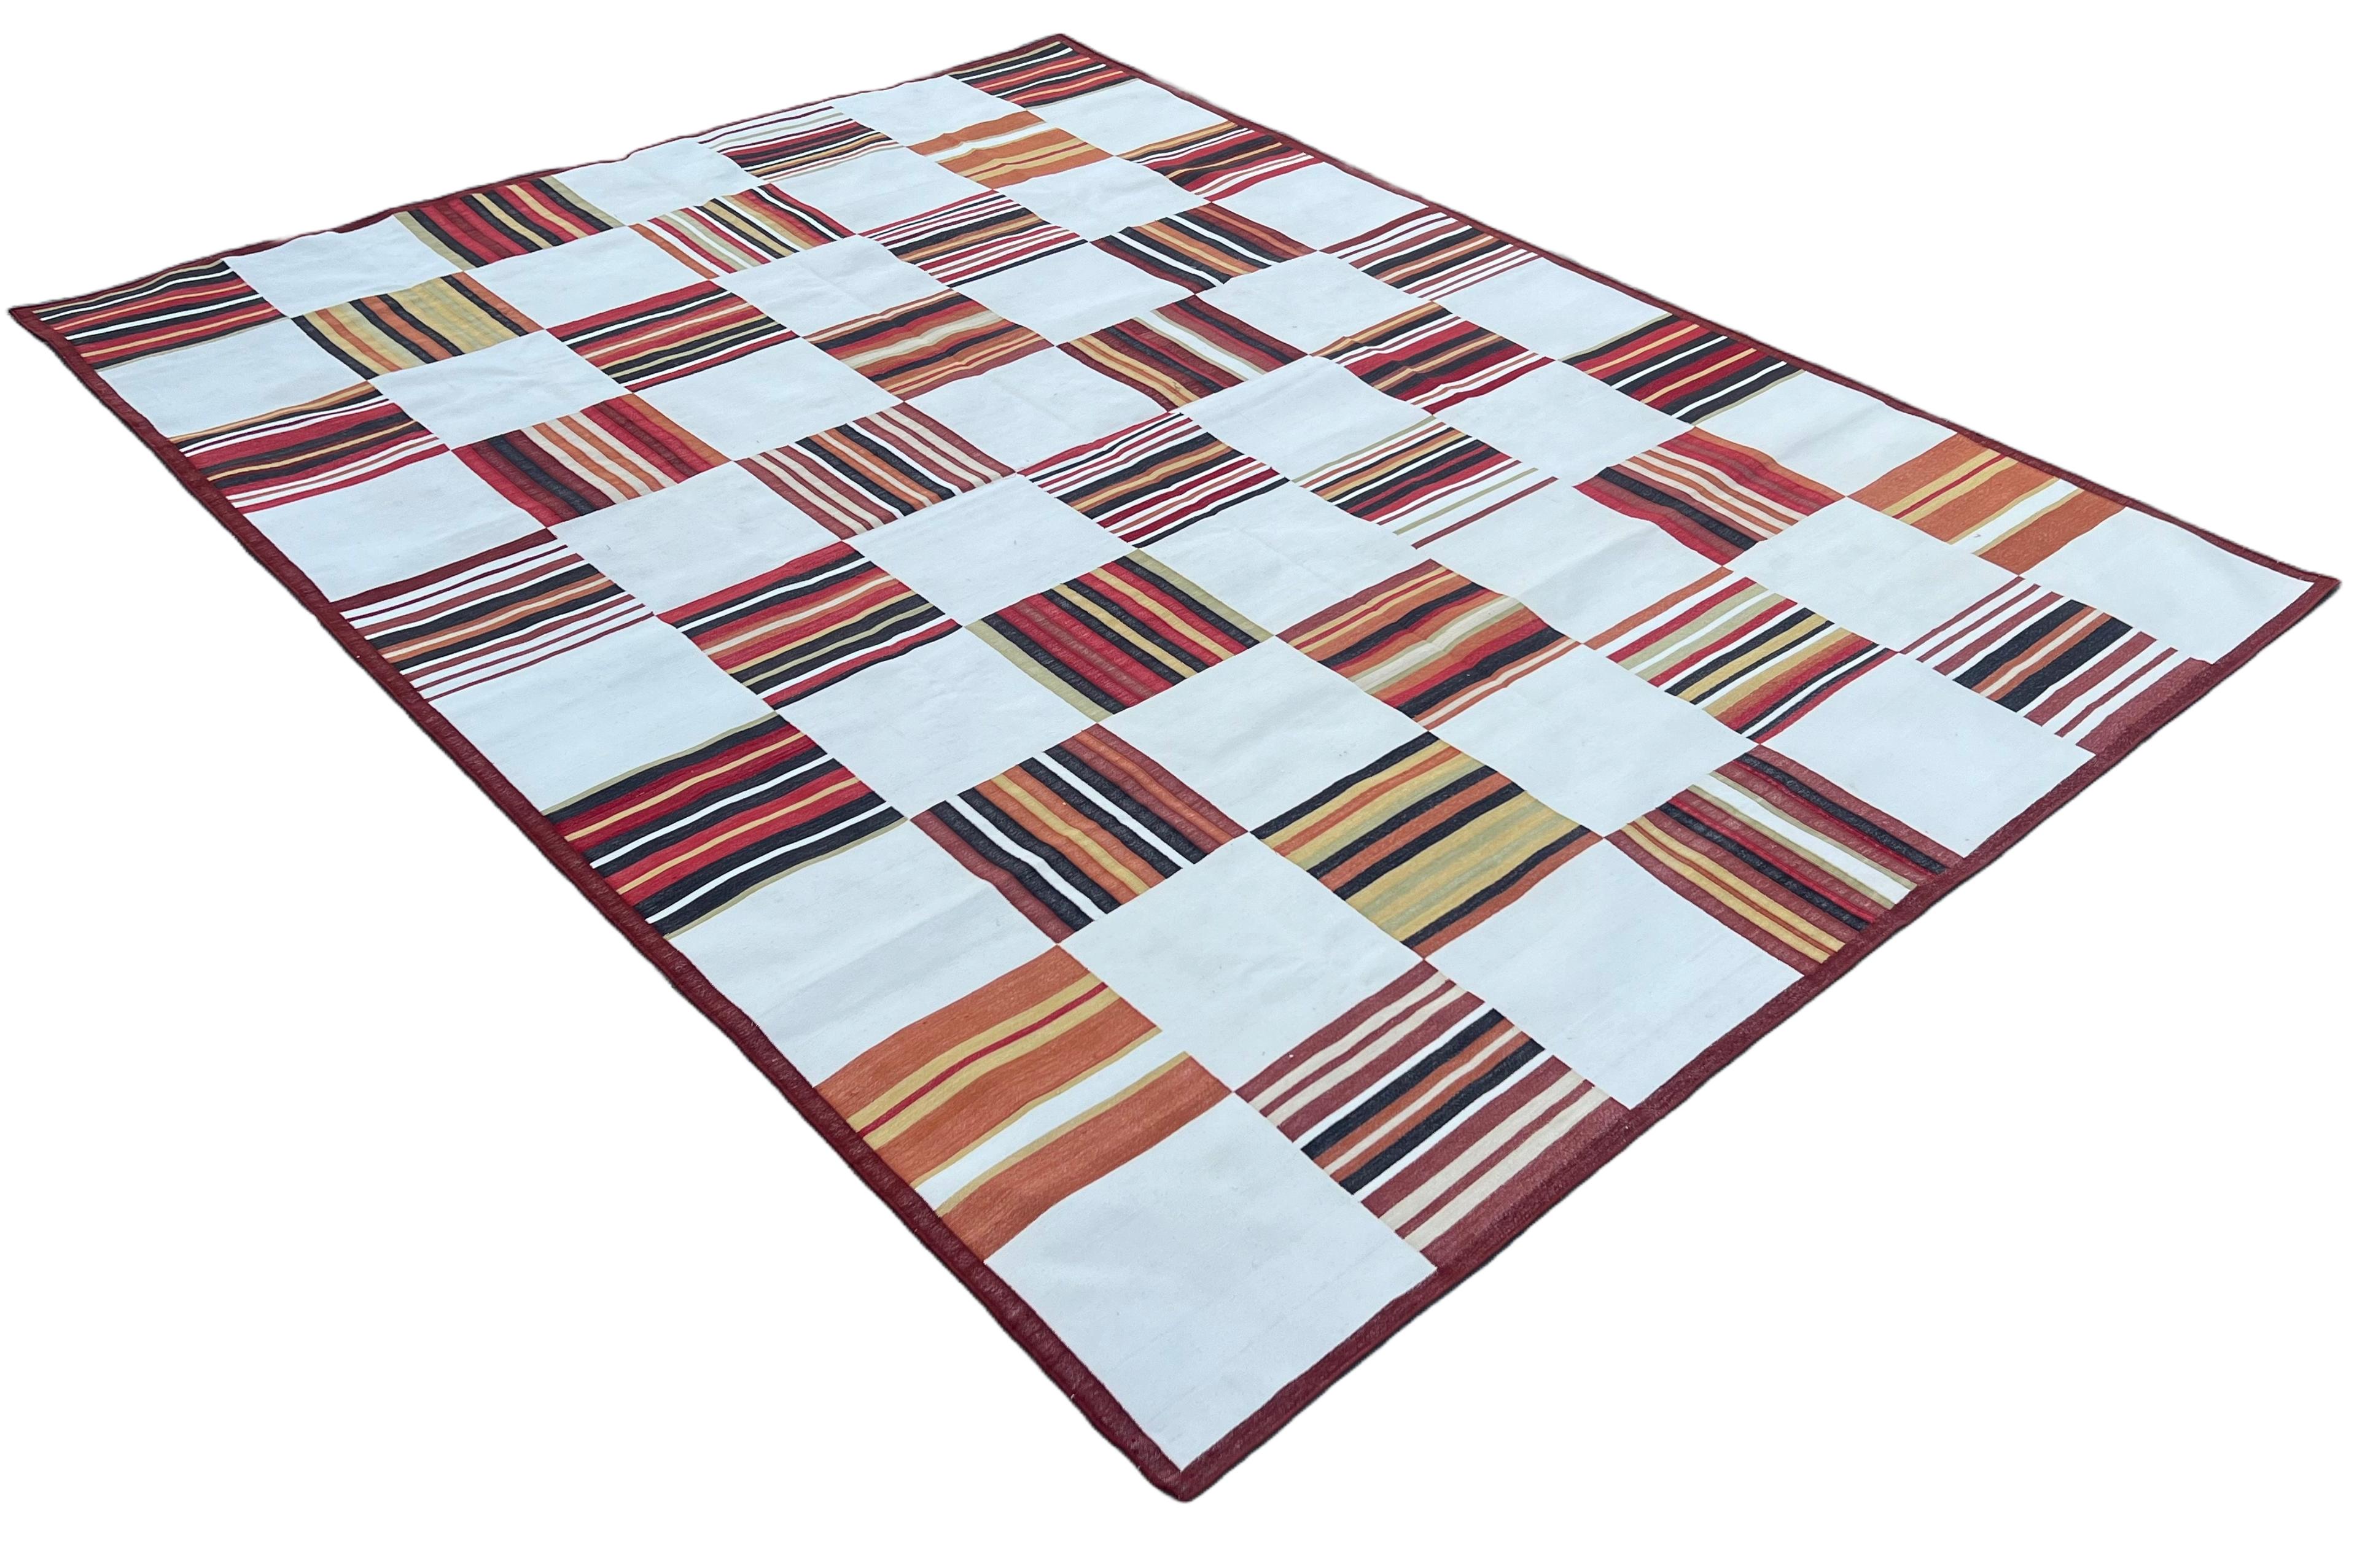 Pflanzlich gefärbter Teppich aus Baumwolle, Creme & Terrakotta Rote Fliese gemustert Indischer Dhurrie-9'x12'
Diese speziellen flachgewebten Dhurries werden aus 15-fachem Garn aus 100% Baumwolle handgewebt. Aufgrund der speziellen